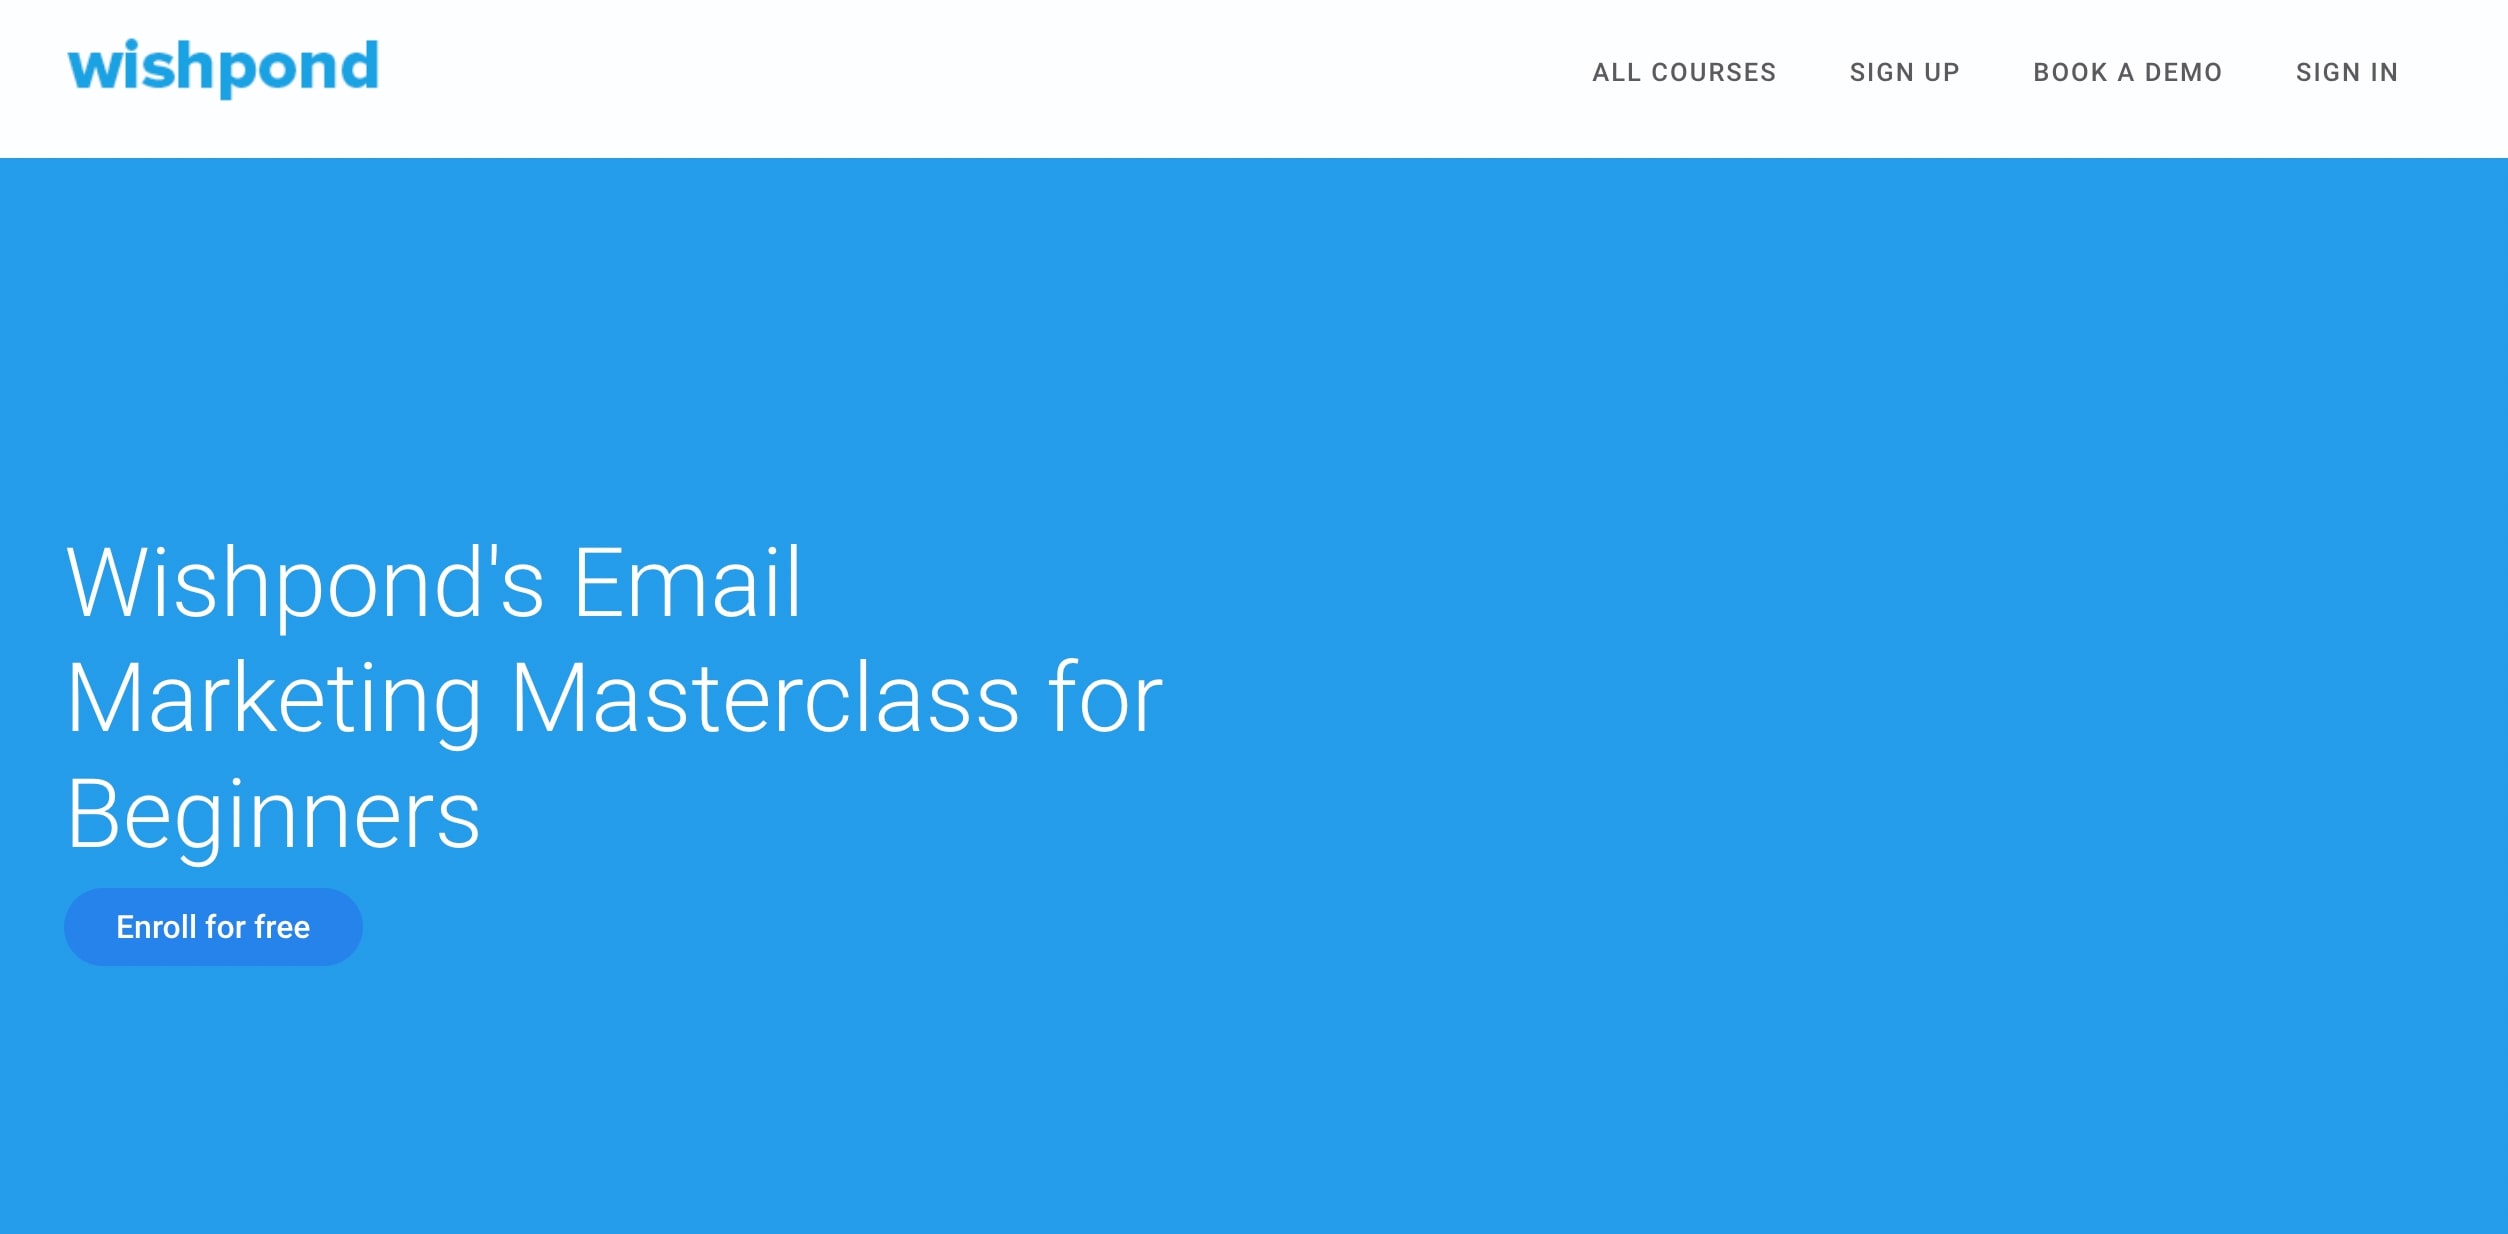 wishpond-email-marketing-masterclass